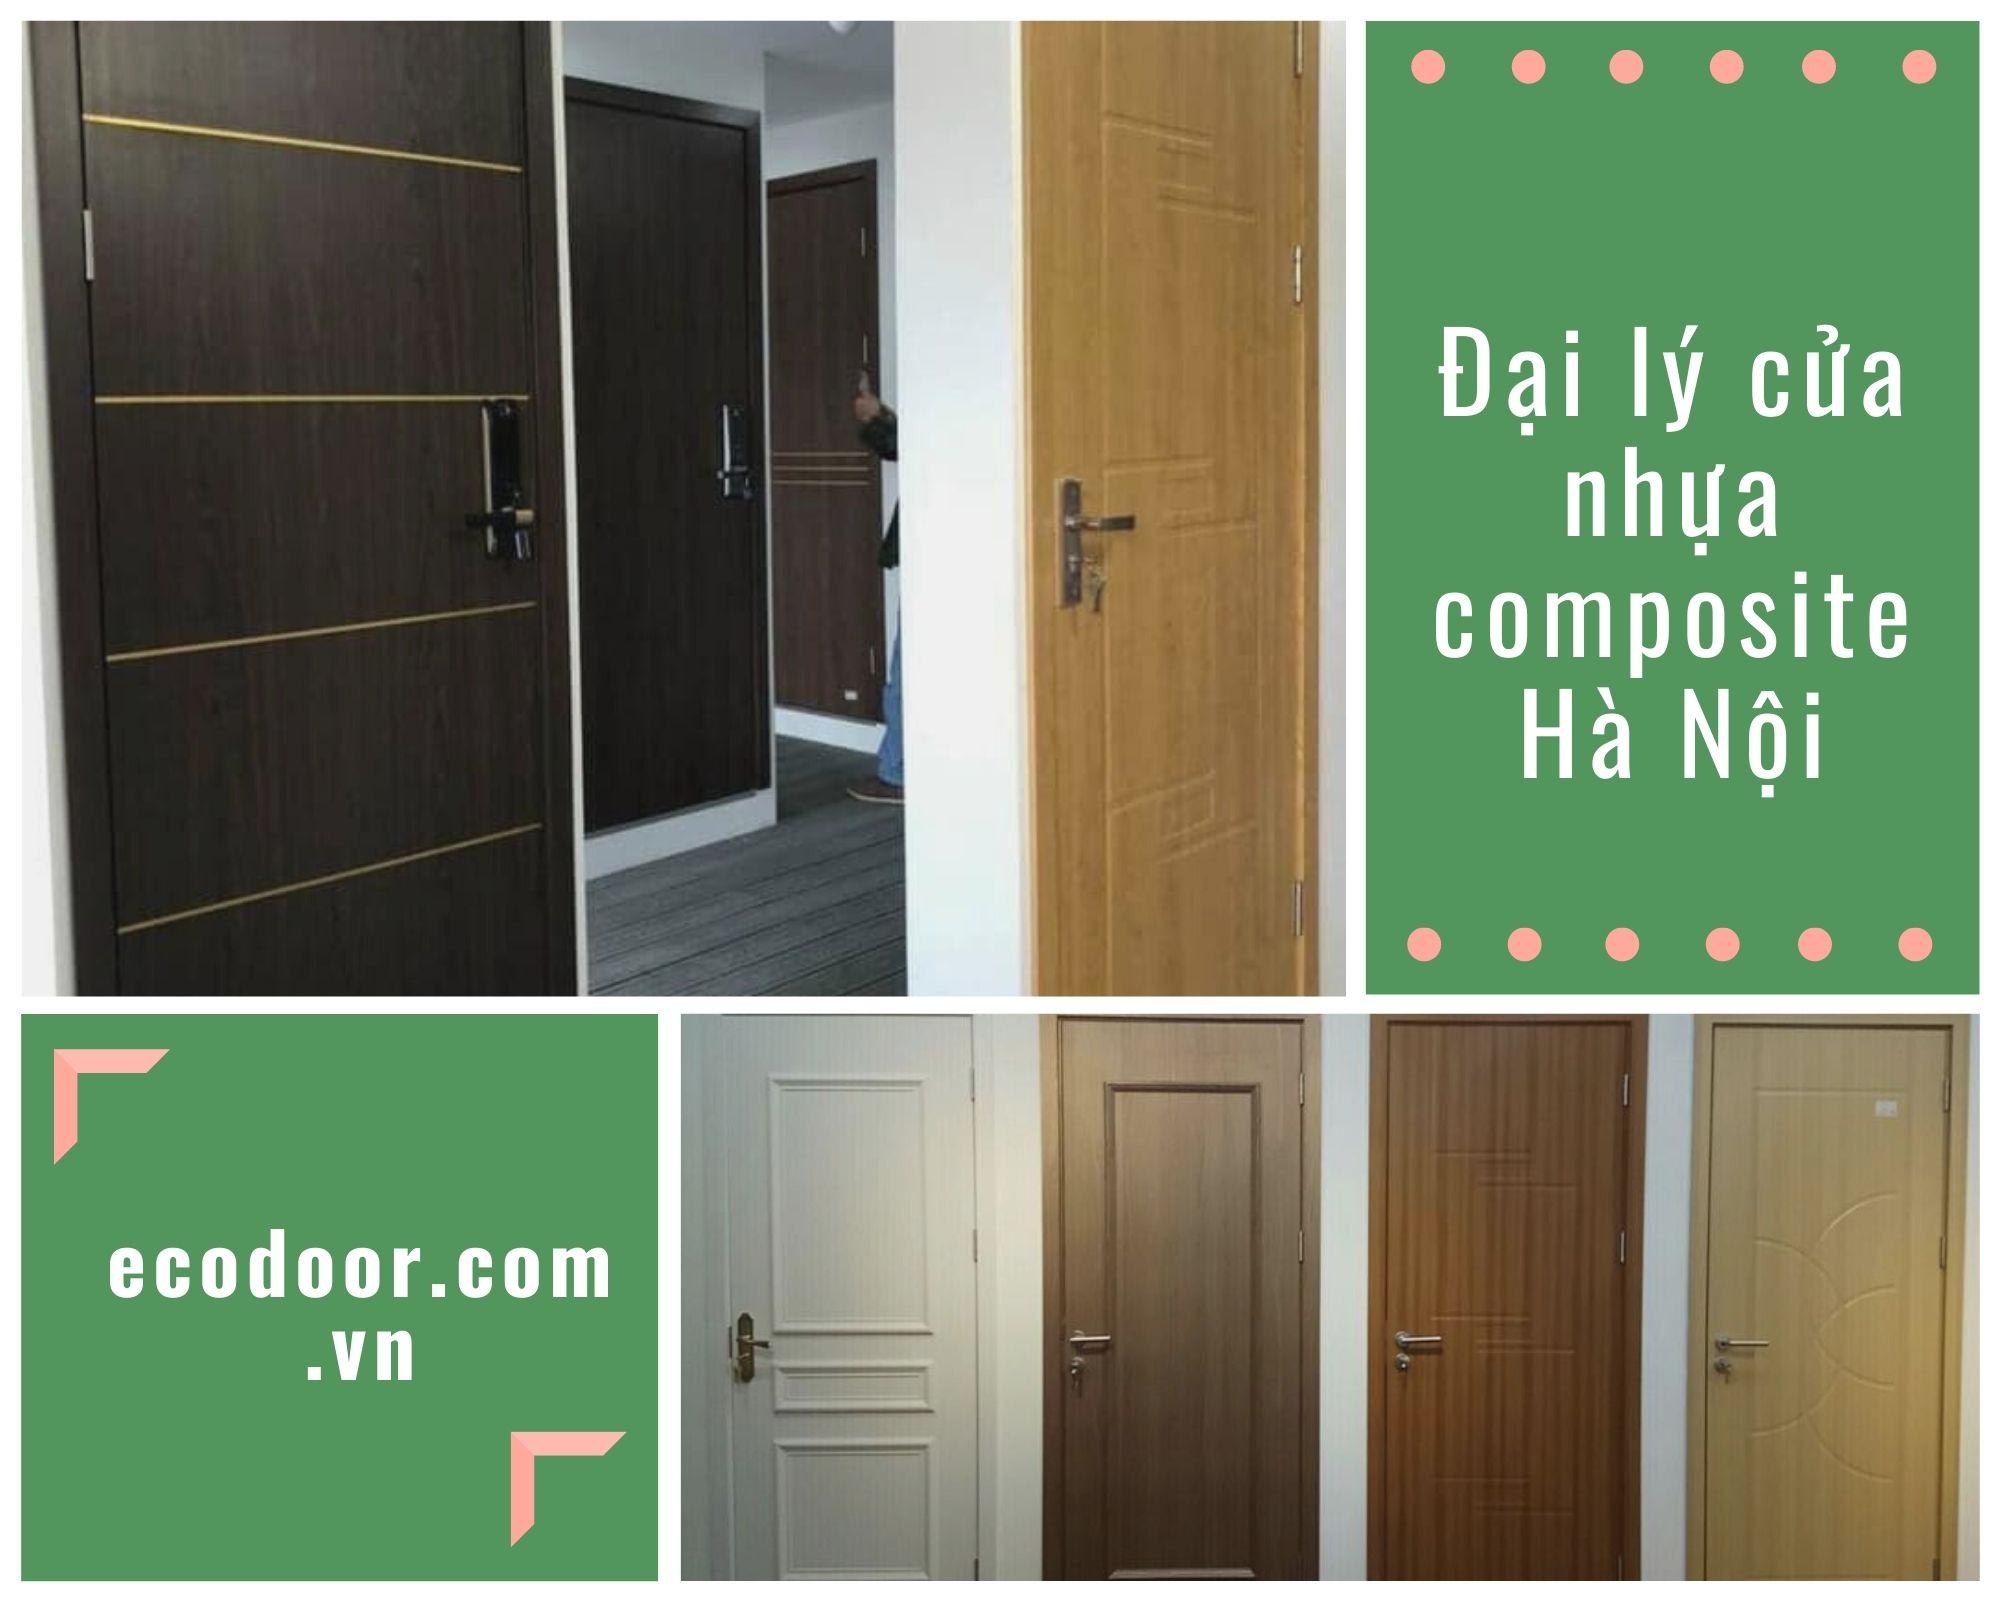 Địa chỉ uy tín mua cửa gỗ nhựa composite Hà Nội